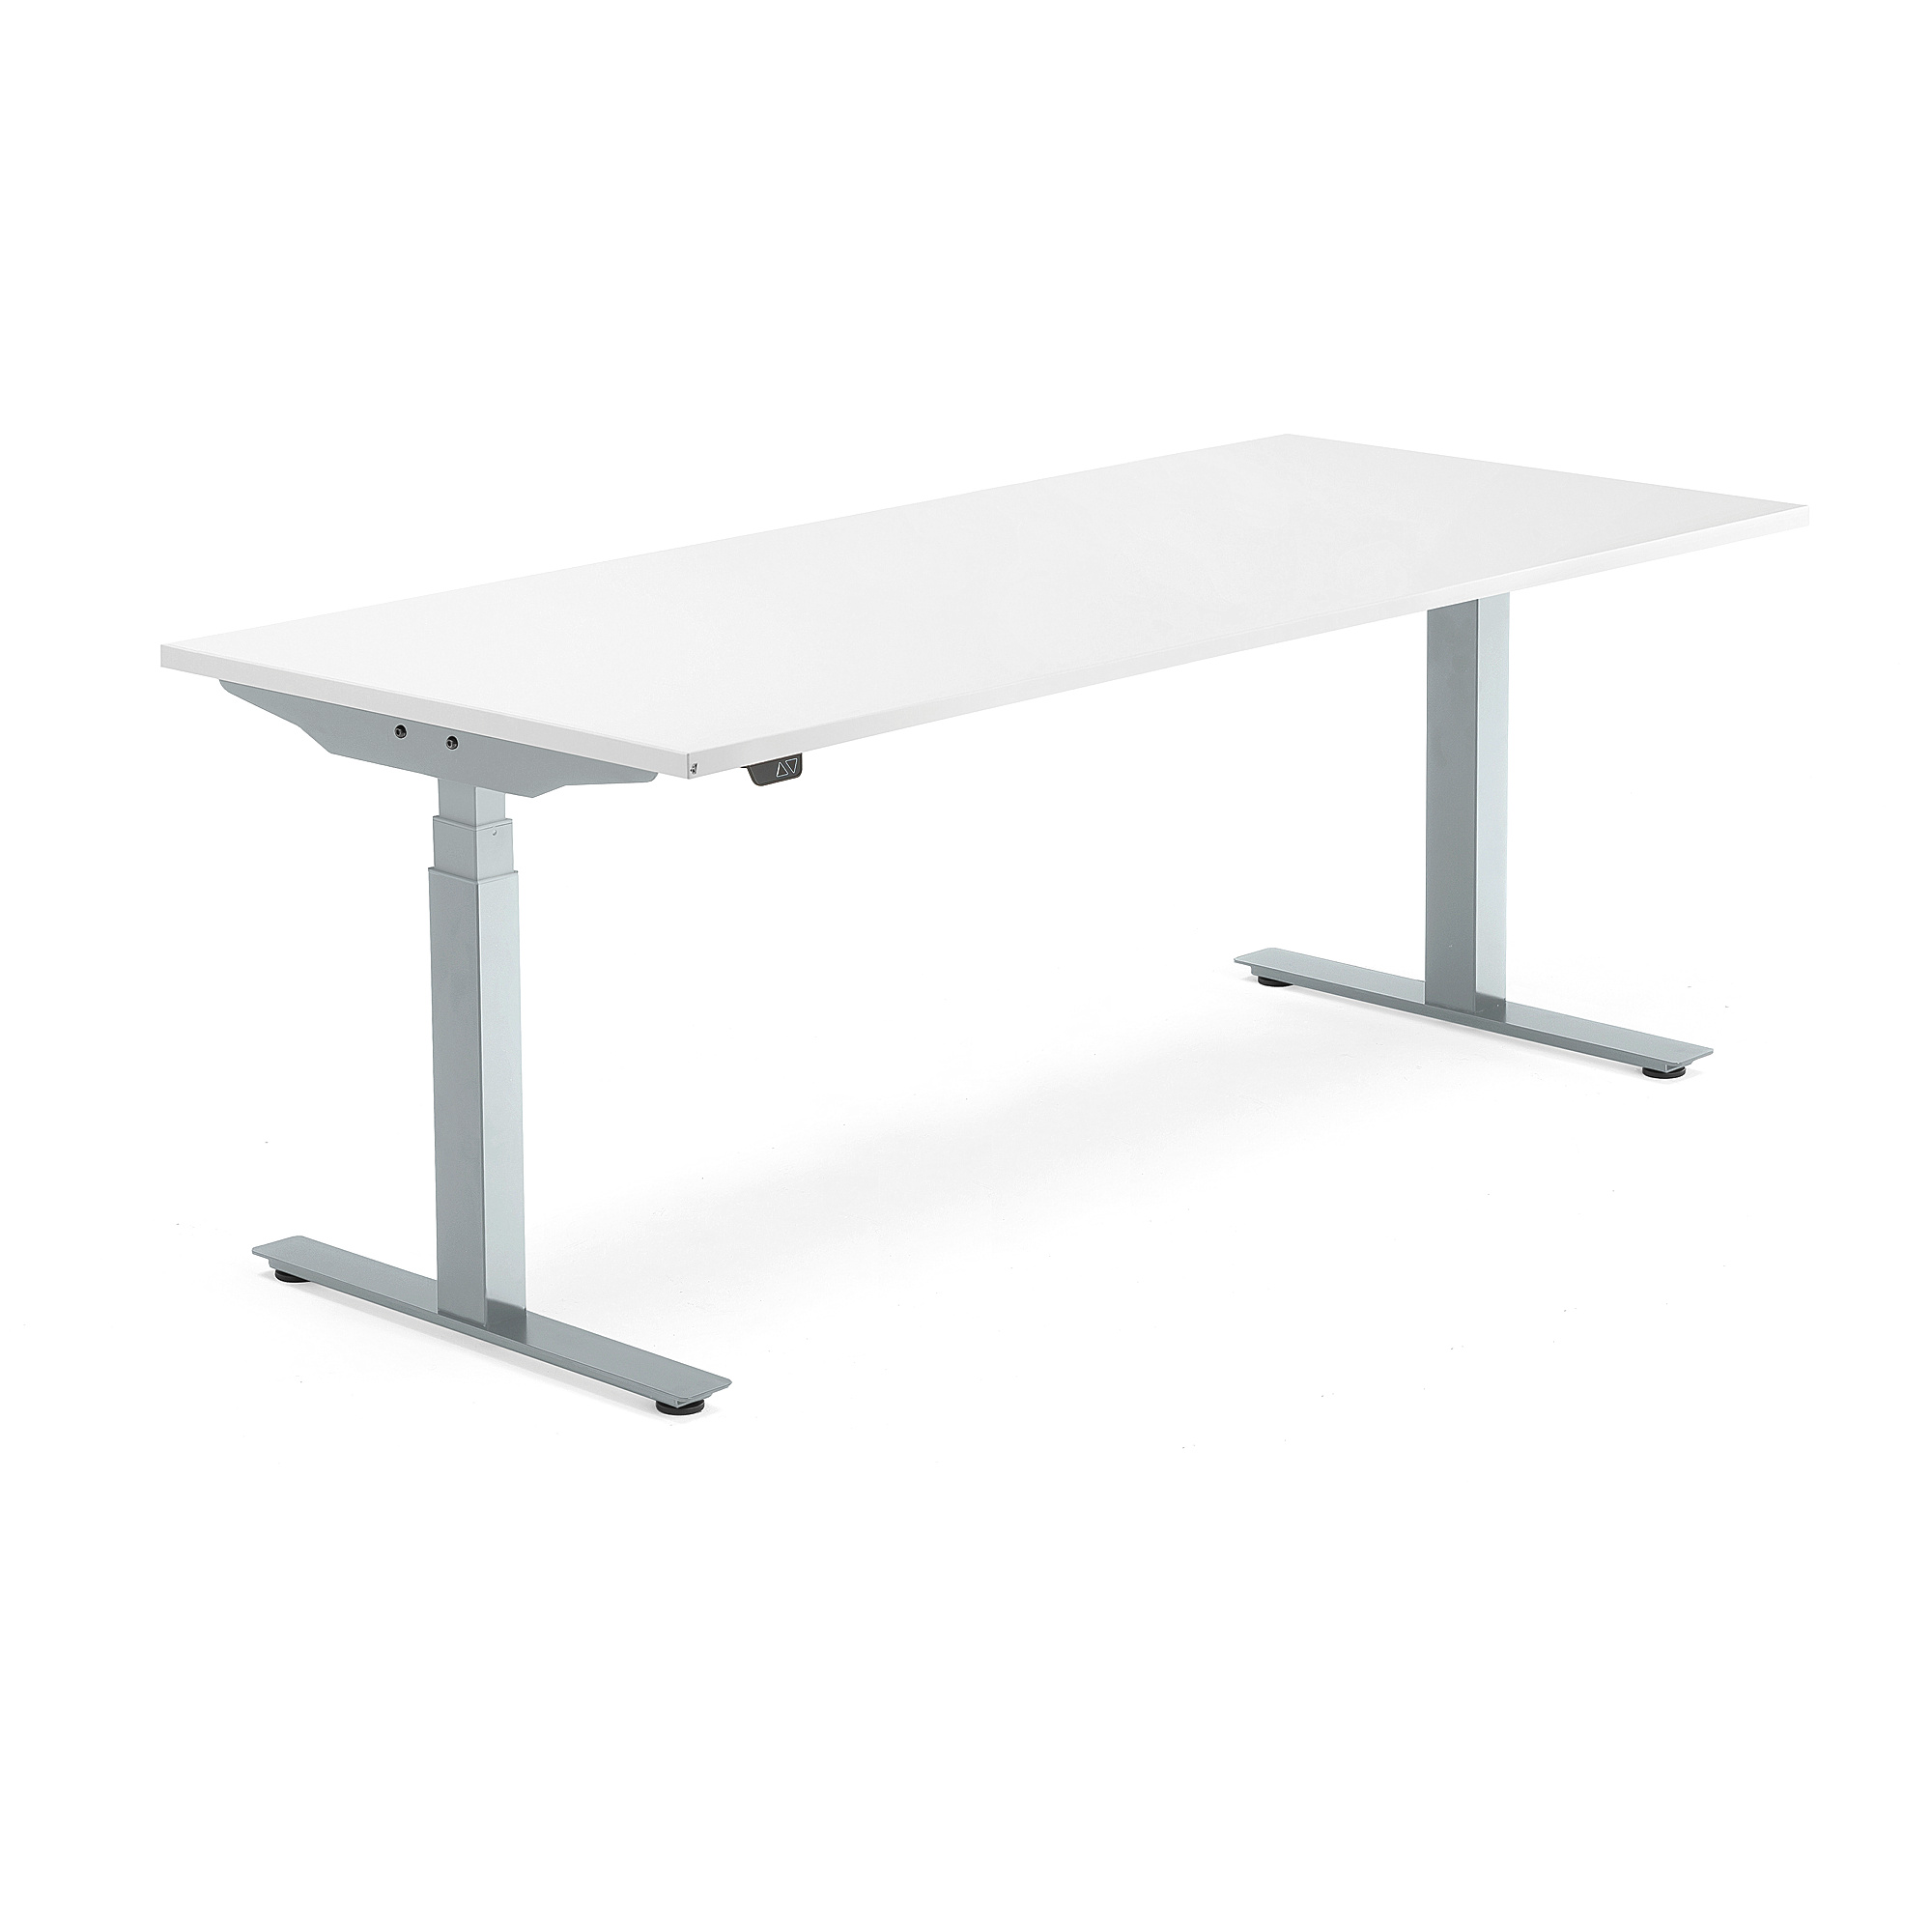 Výškově nastavitelný stůl MODULUS, 1800x800 mm, stříbrný rám, bílá